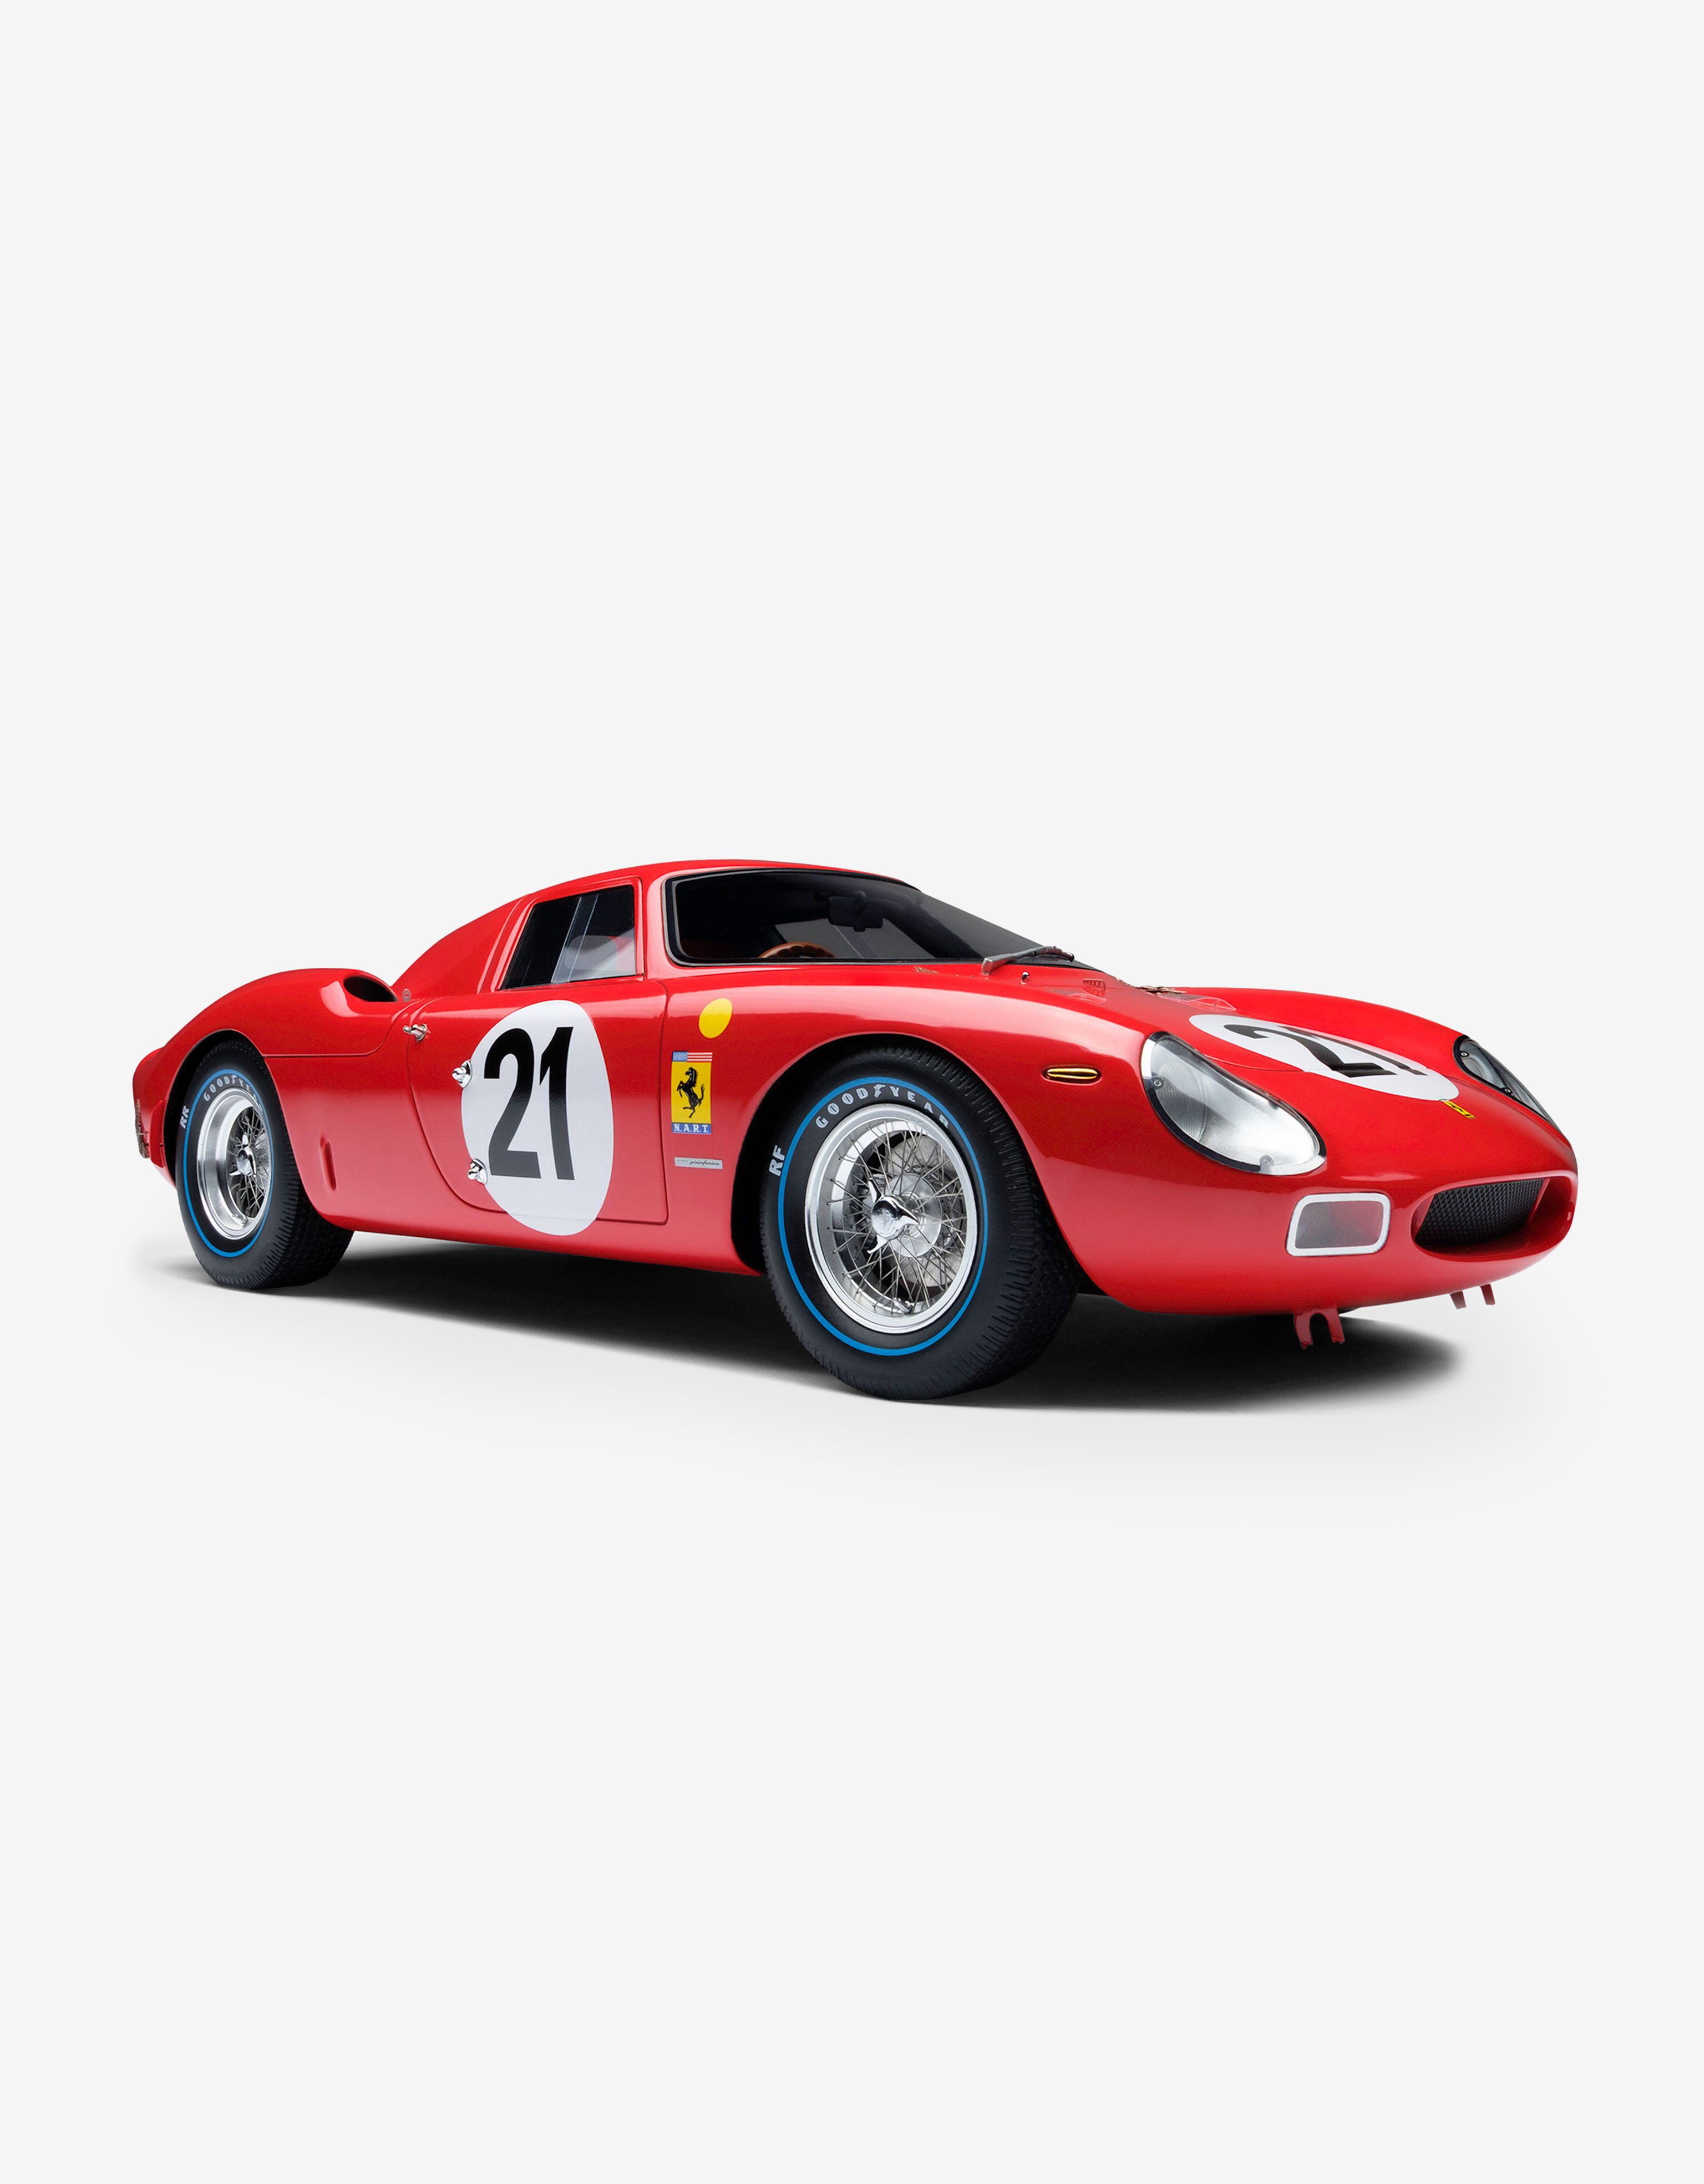 Ferrari Miniatura Ferrari 250 LM 1965 Le Mans a escala 1:18 MULTICOLOR L7976f